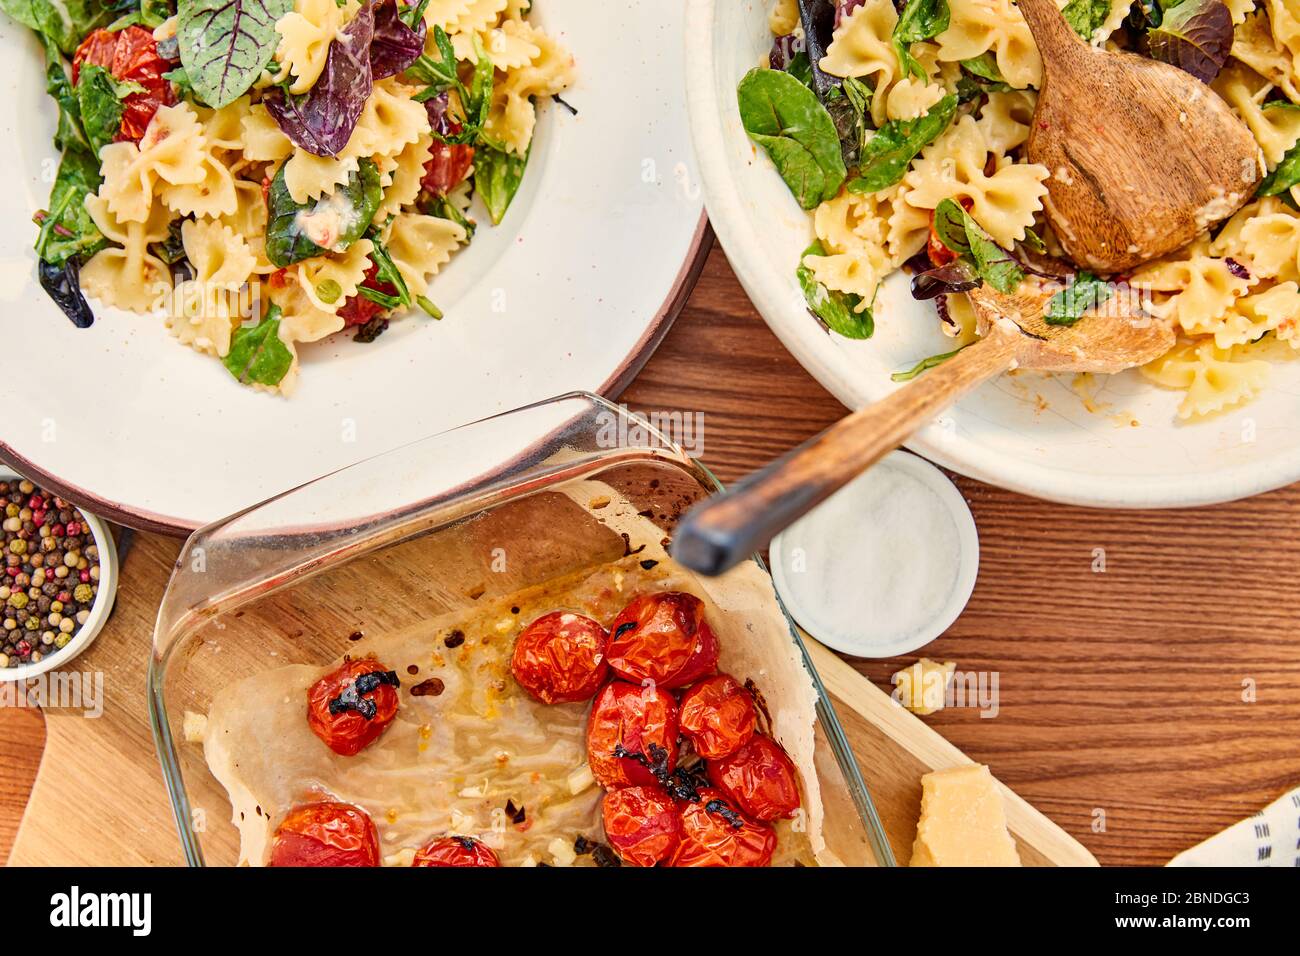 Vue de dessus de l'assiette et du bol avec salade de pâtes et spatules près de la planche à découper et du plat à pâtisserie avec les ingrédients sur fond de bois Banque D'Images